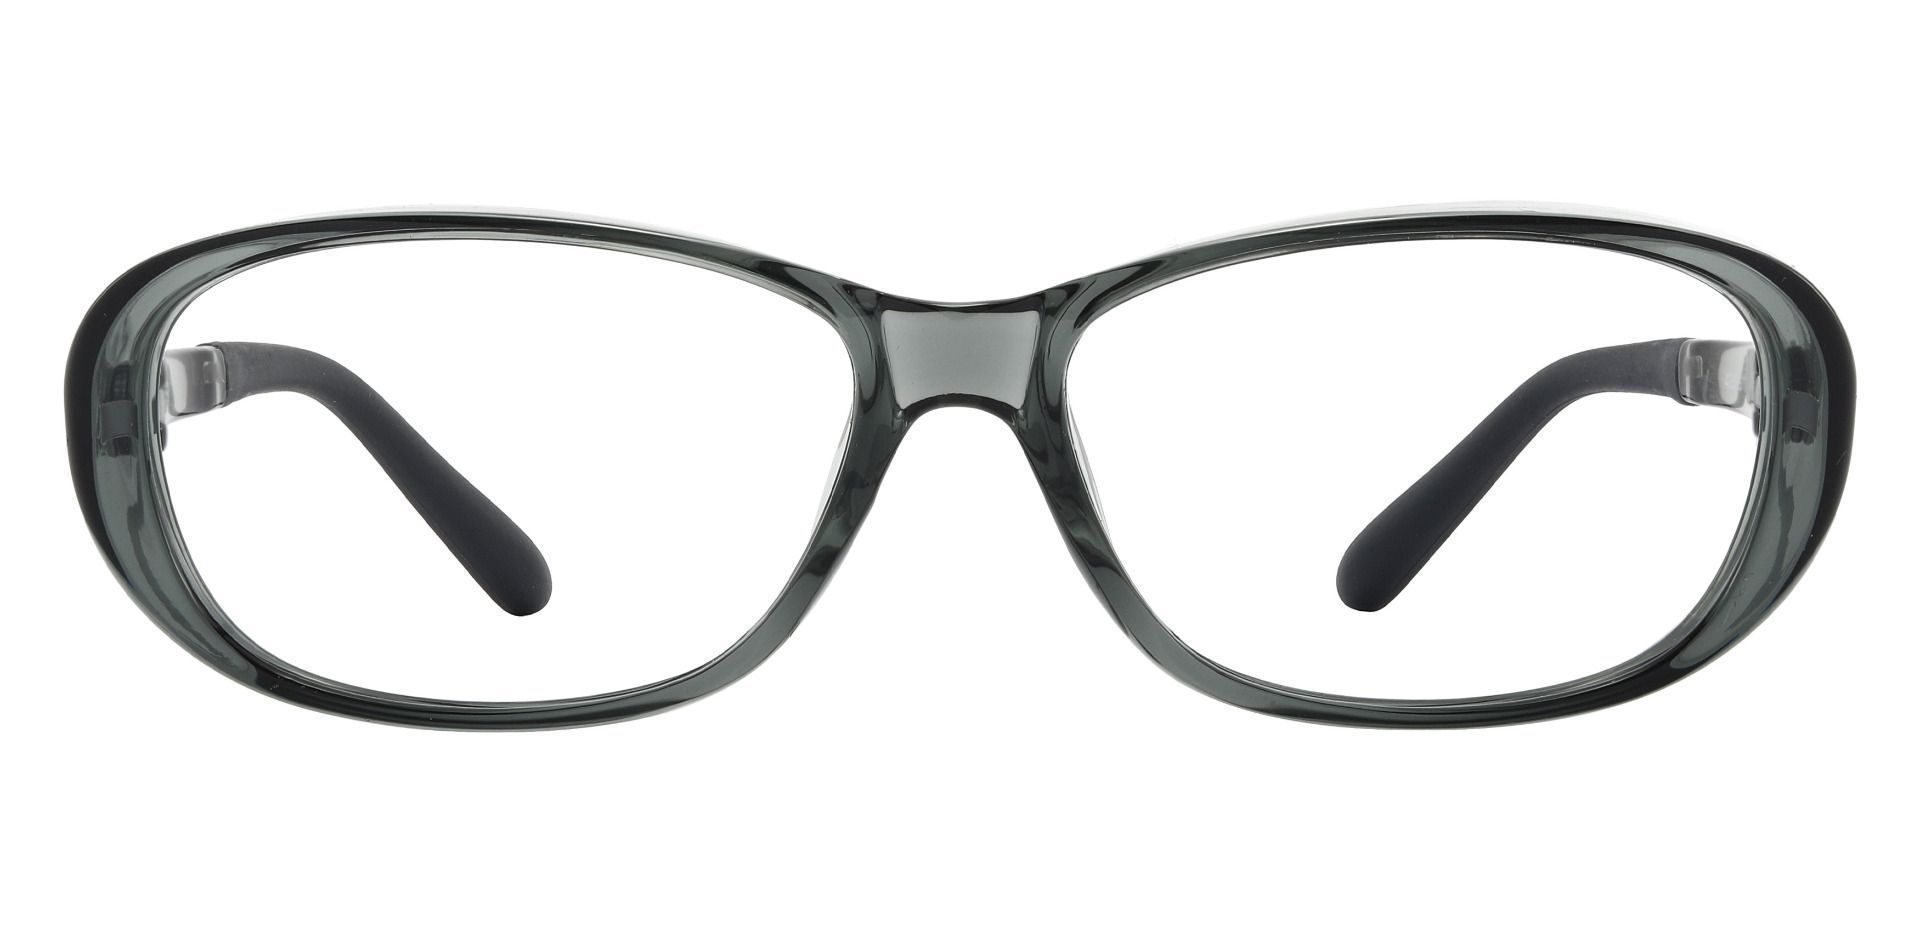 Rosario Sports Goggles Prescription Glasses - Gray